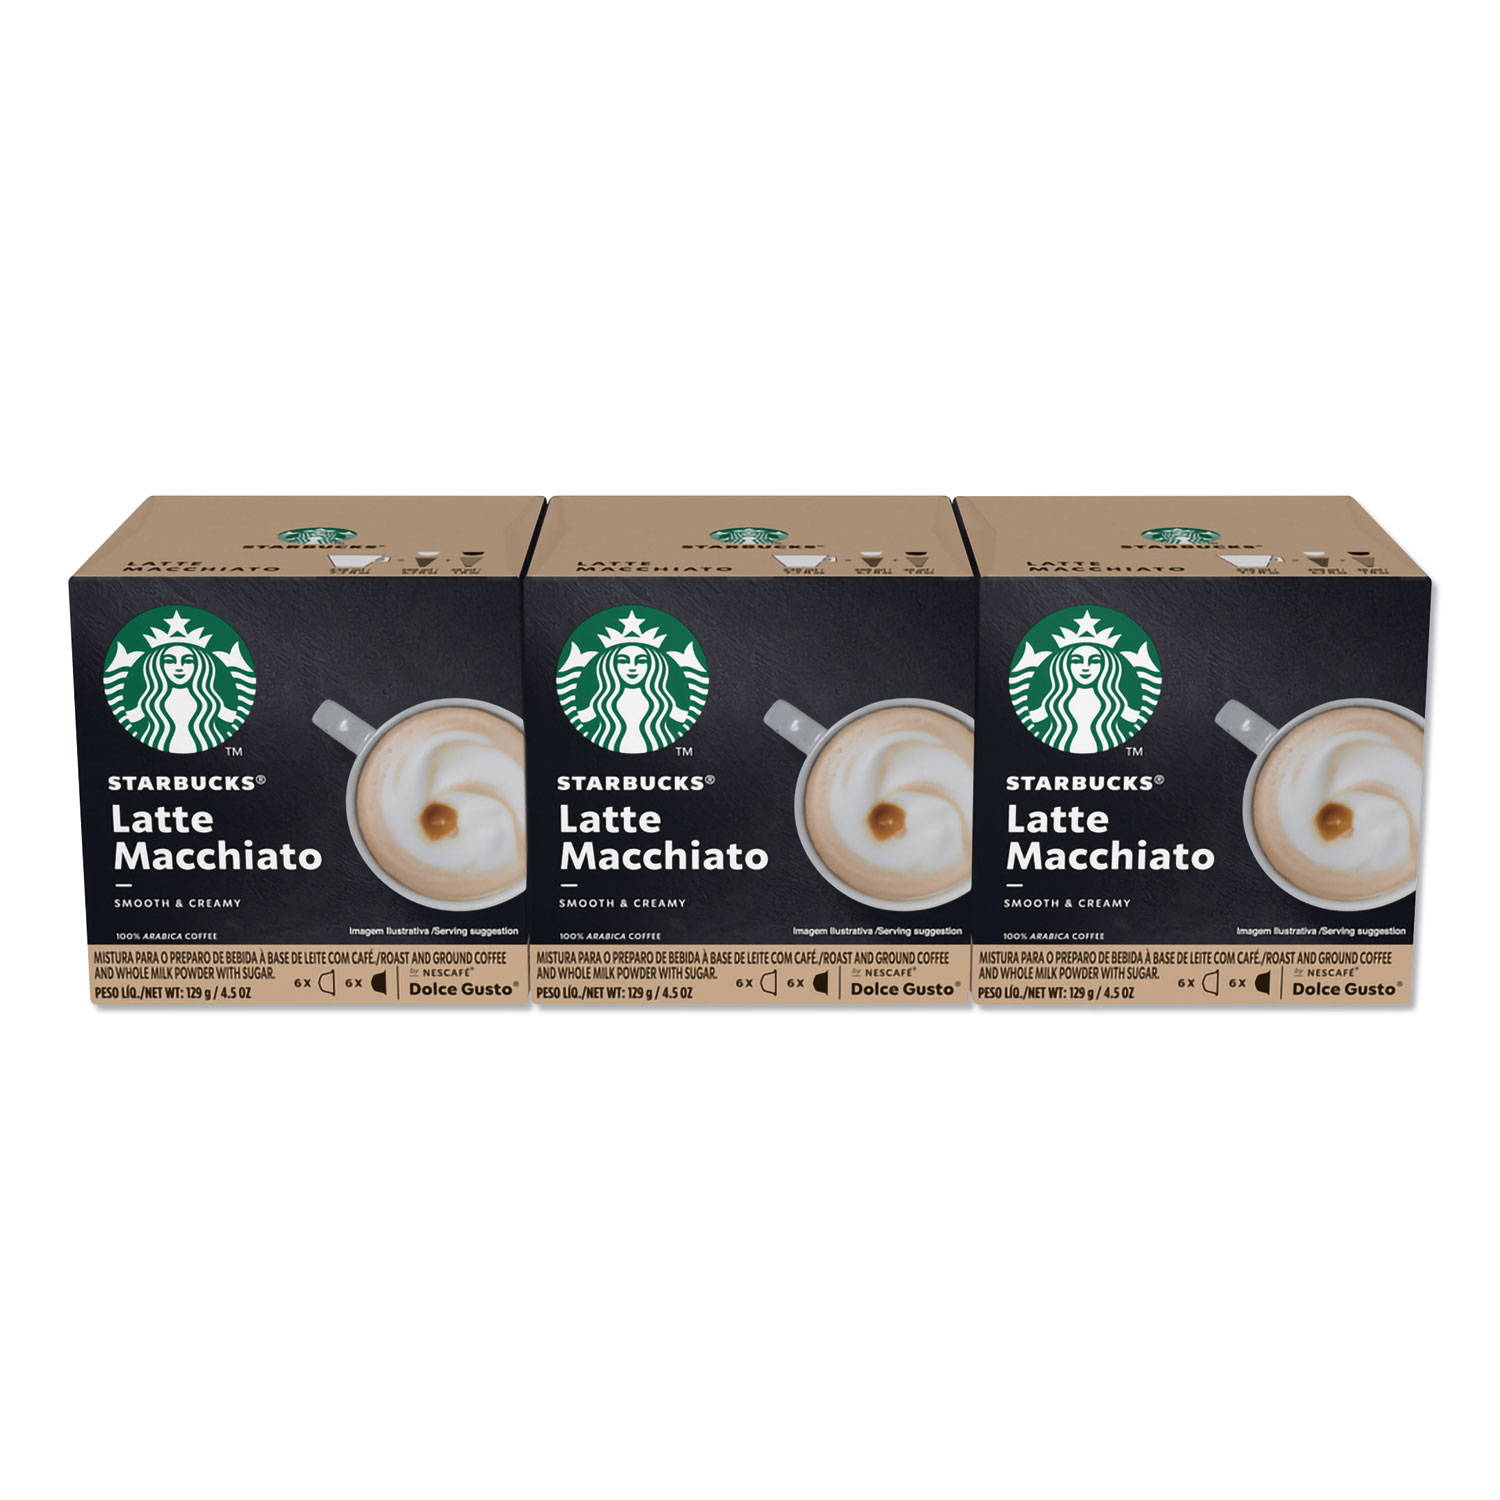  NESCAFÉ Dolce Gusto 94142 Starbucks Coffee Capsules, Latte Macchiato, 36/Carton (NES94142) 